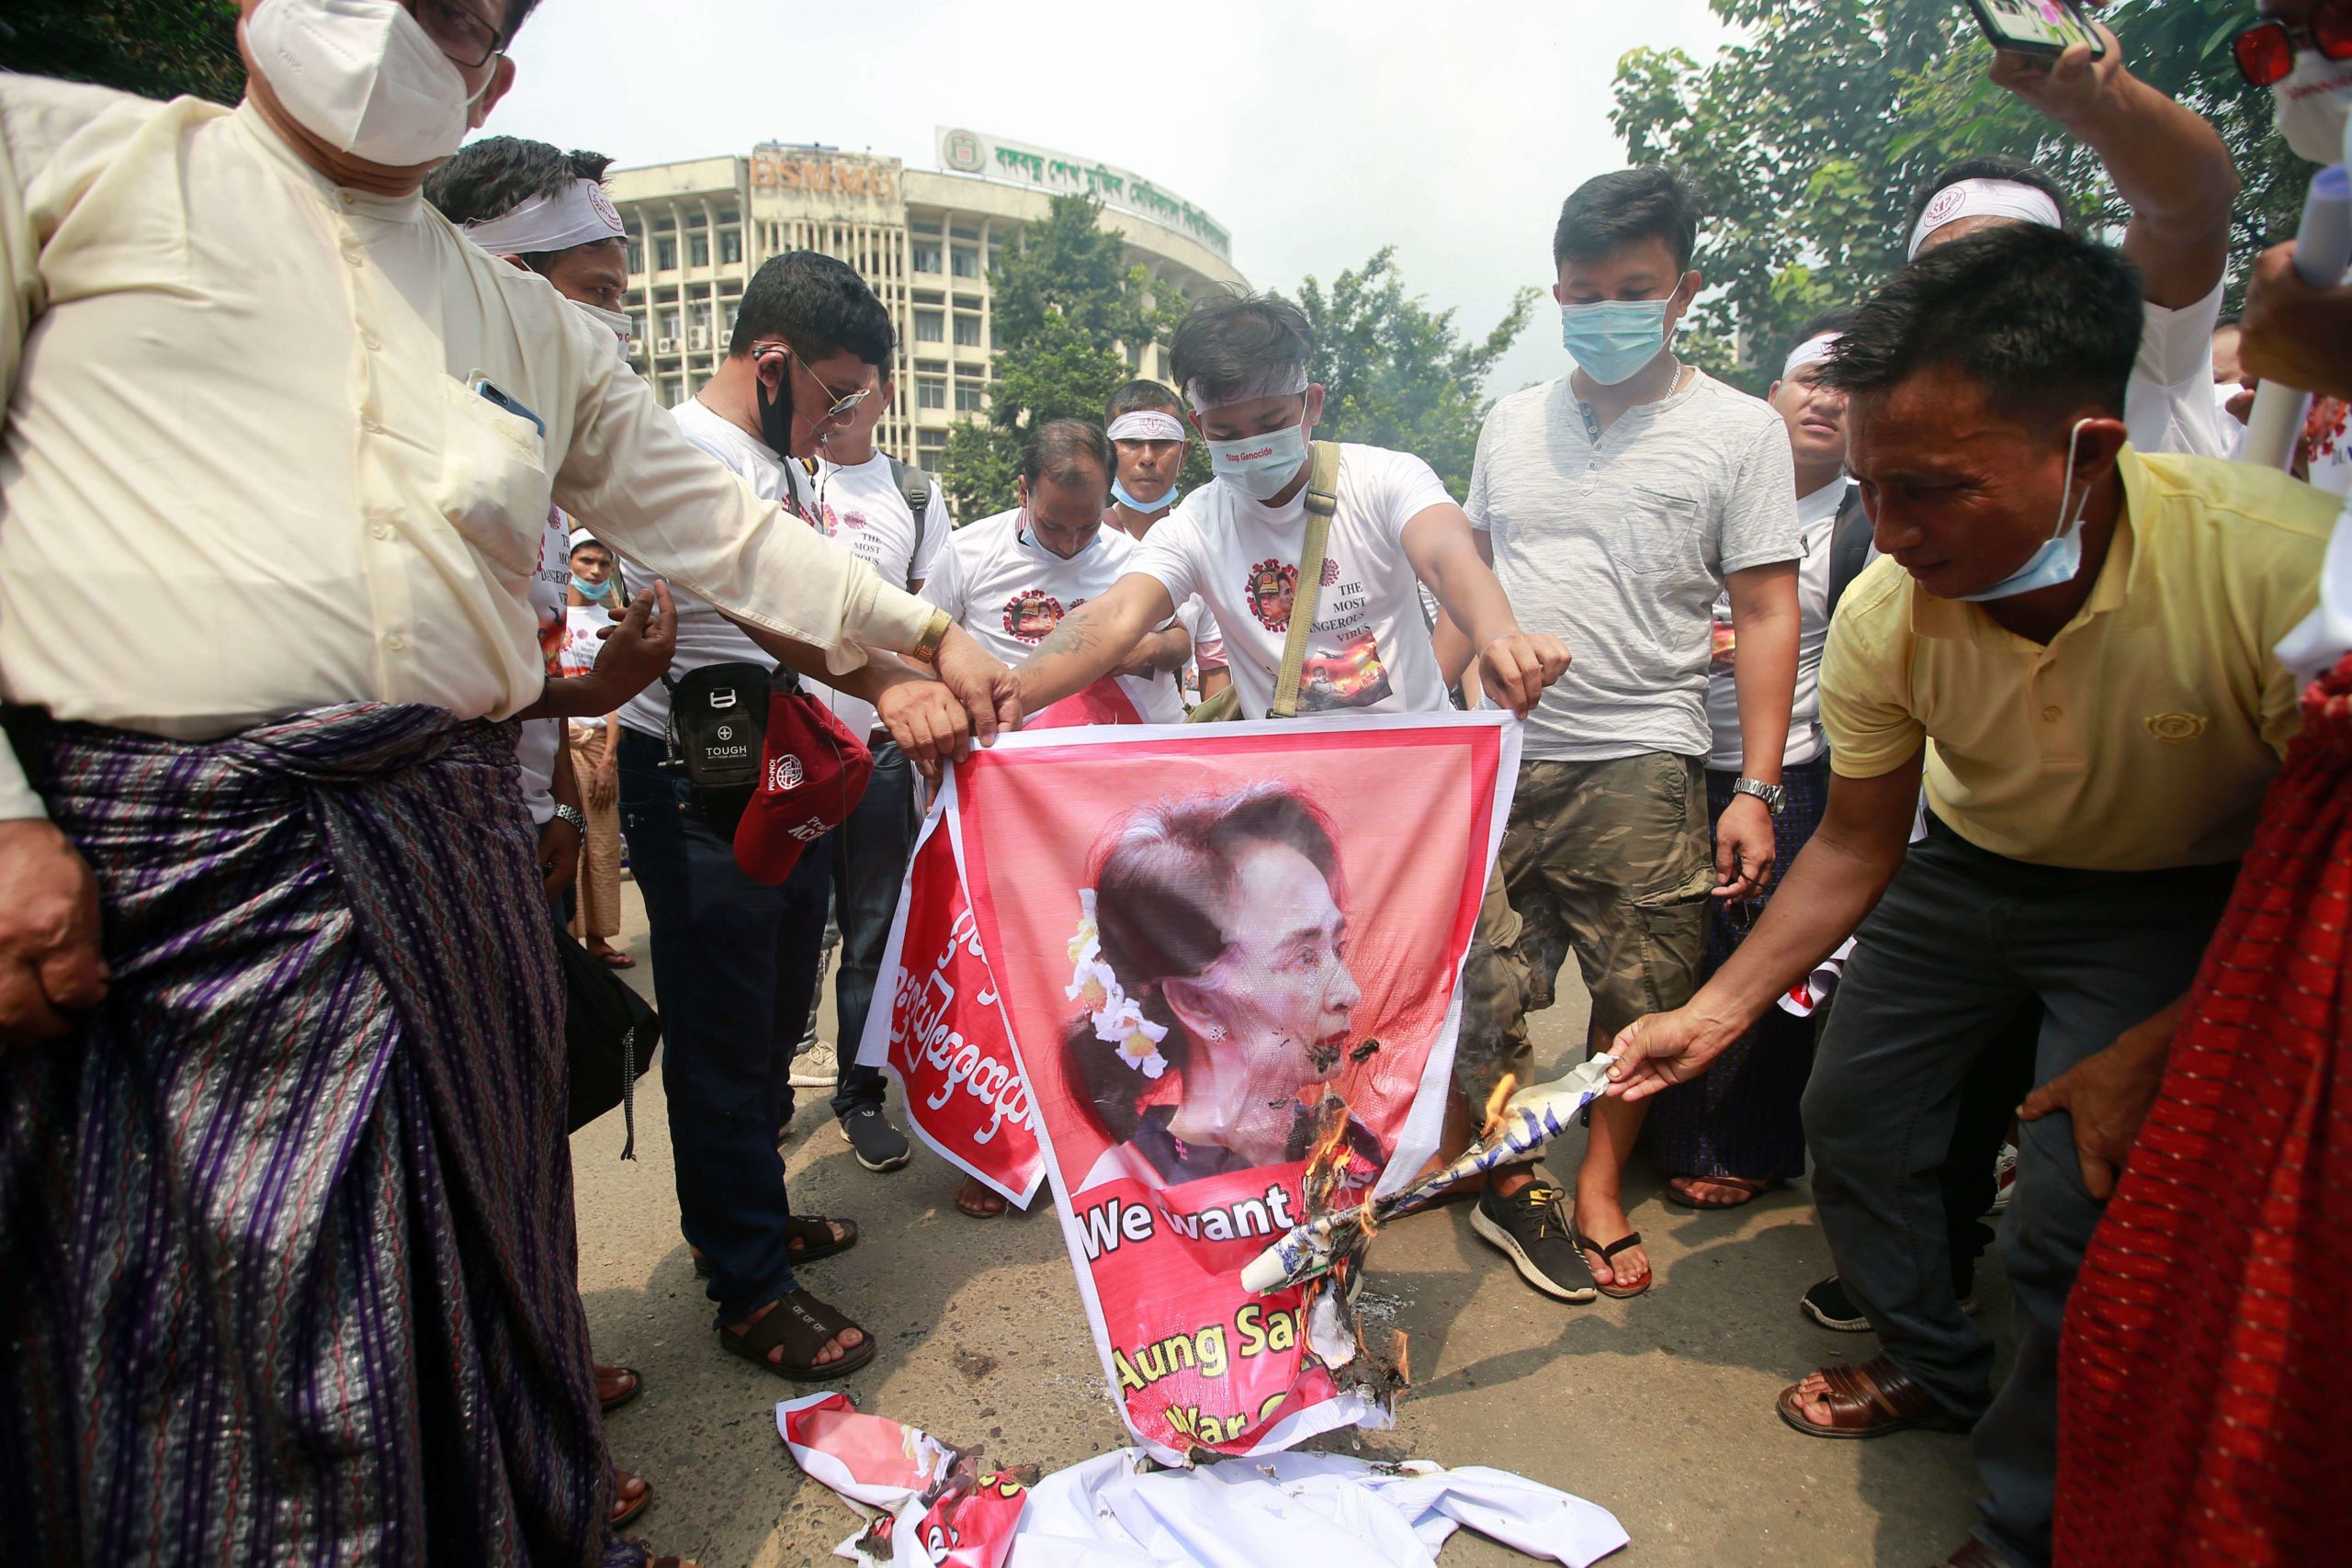 Birmanie: retour à la dictature?